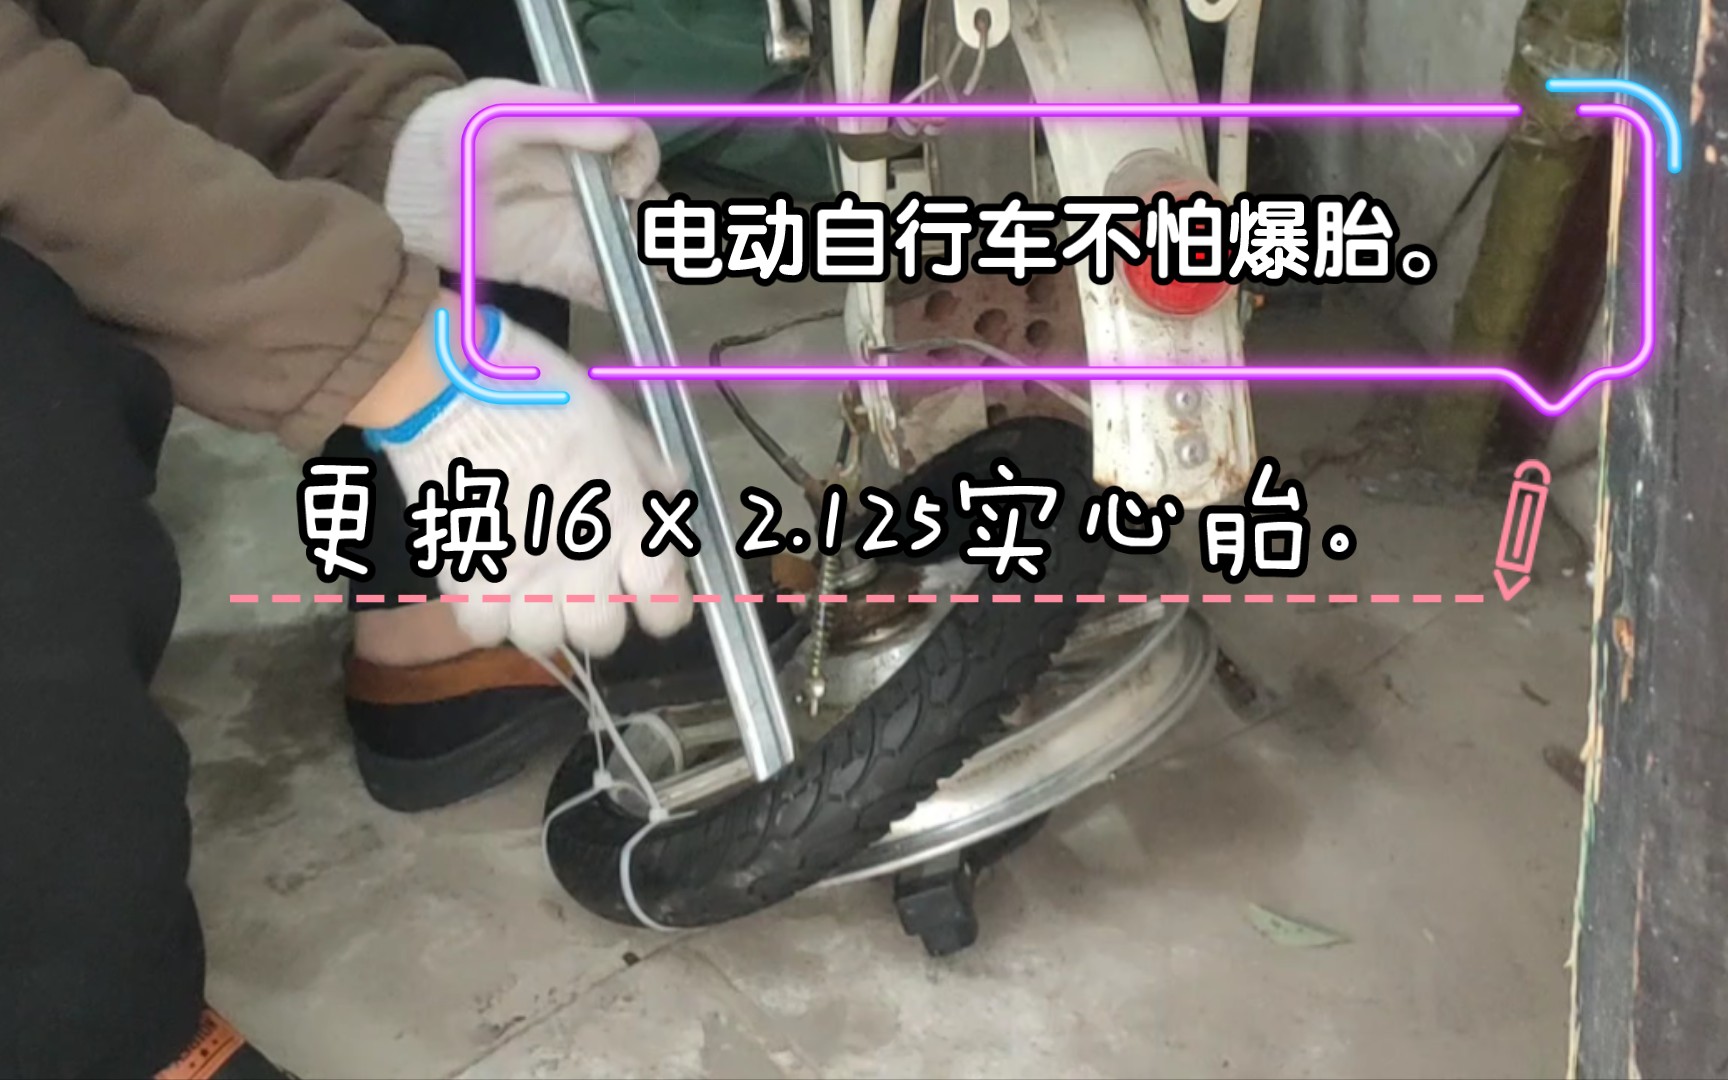 电动自行车更换实心胎。16×2.125的实心胎。最后刹车坏了。那就直接不用了。